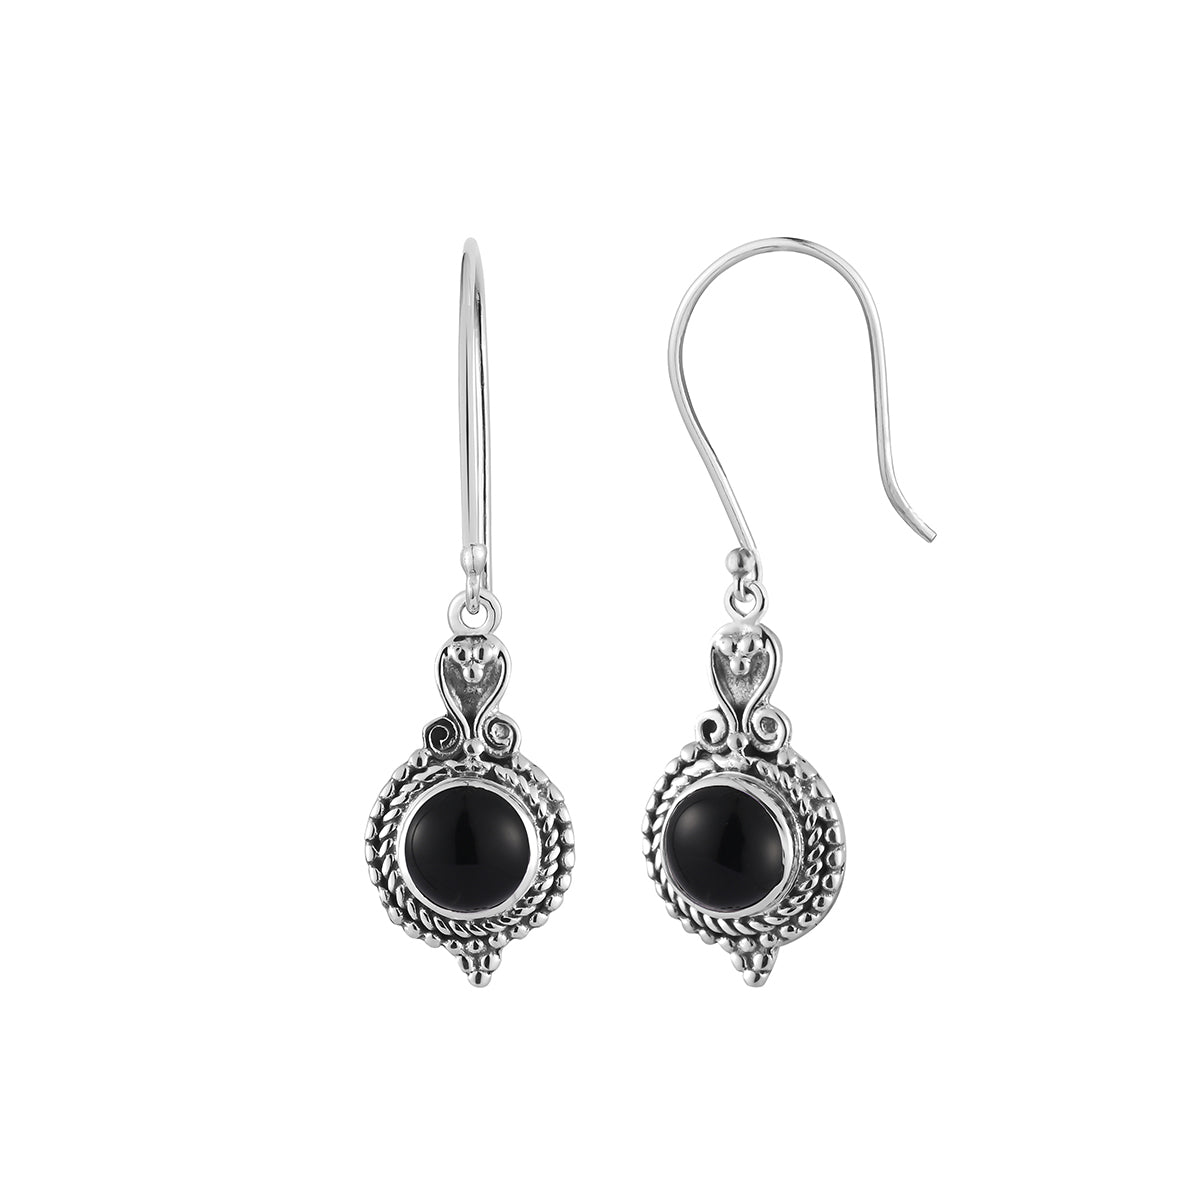 Silver Hoops Earrings in Filigree art by Silver Linings – Silverlinings